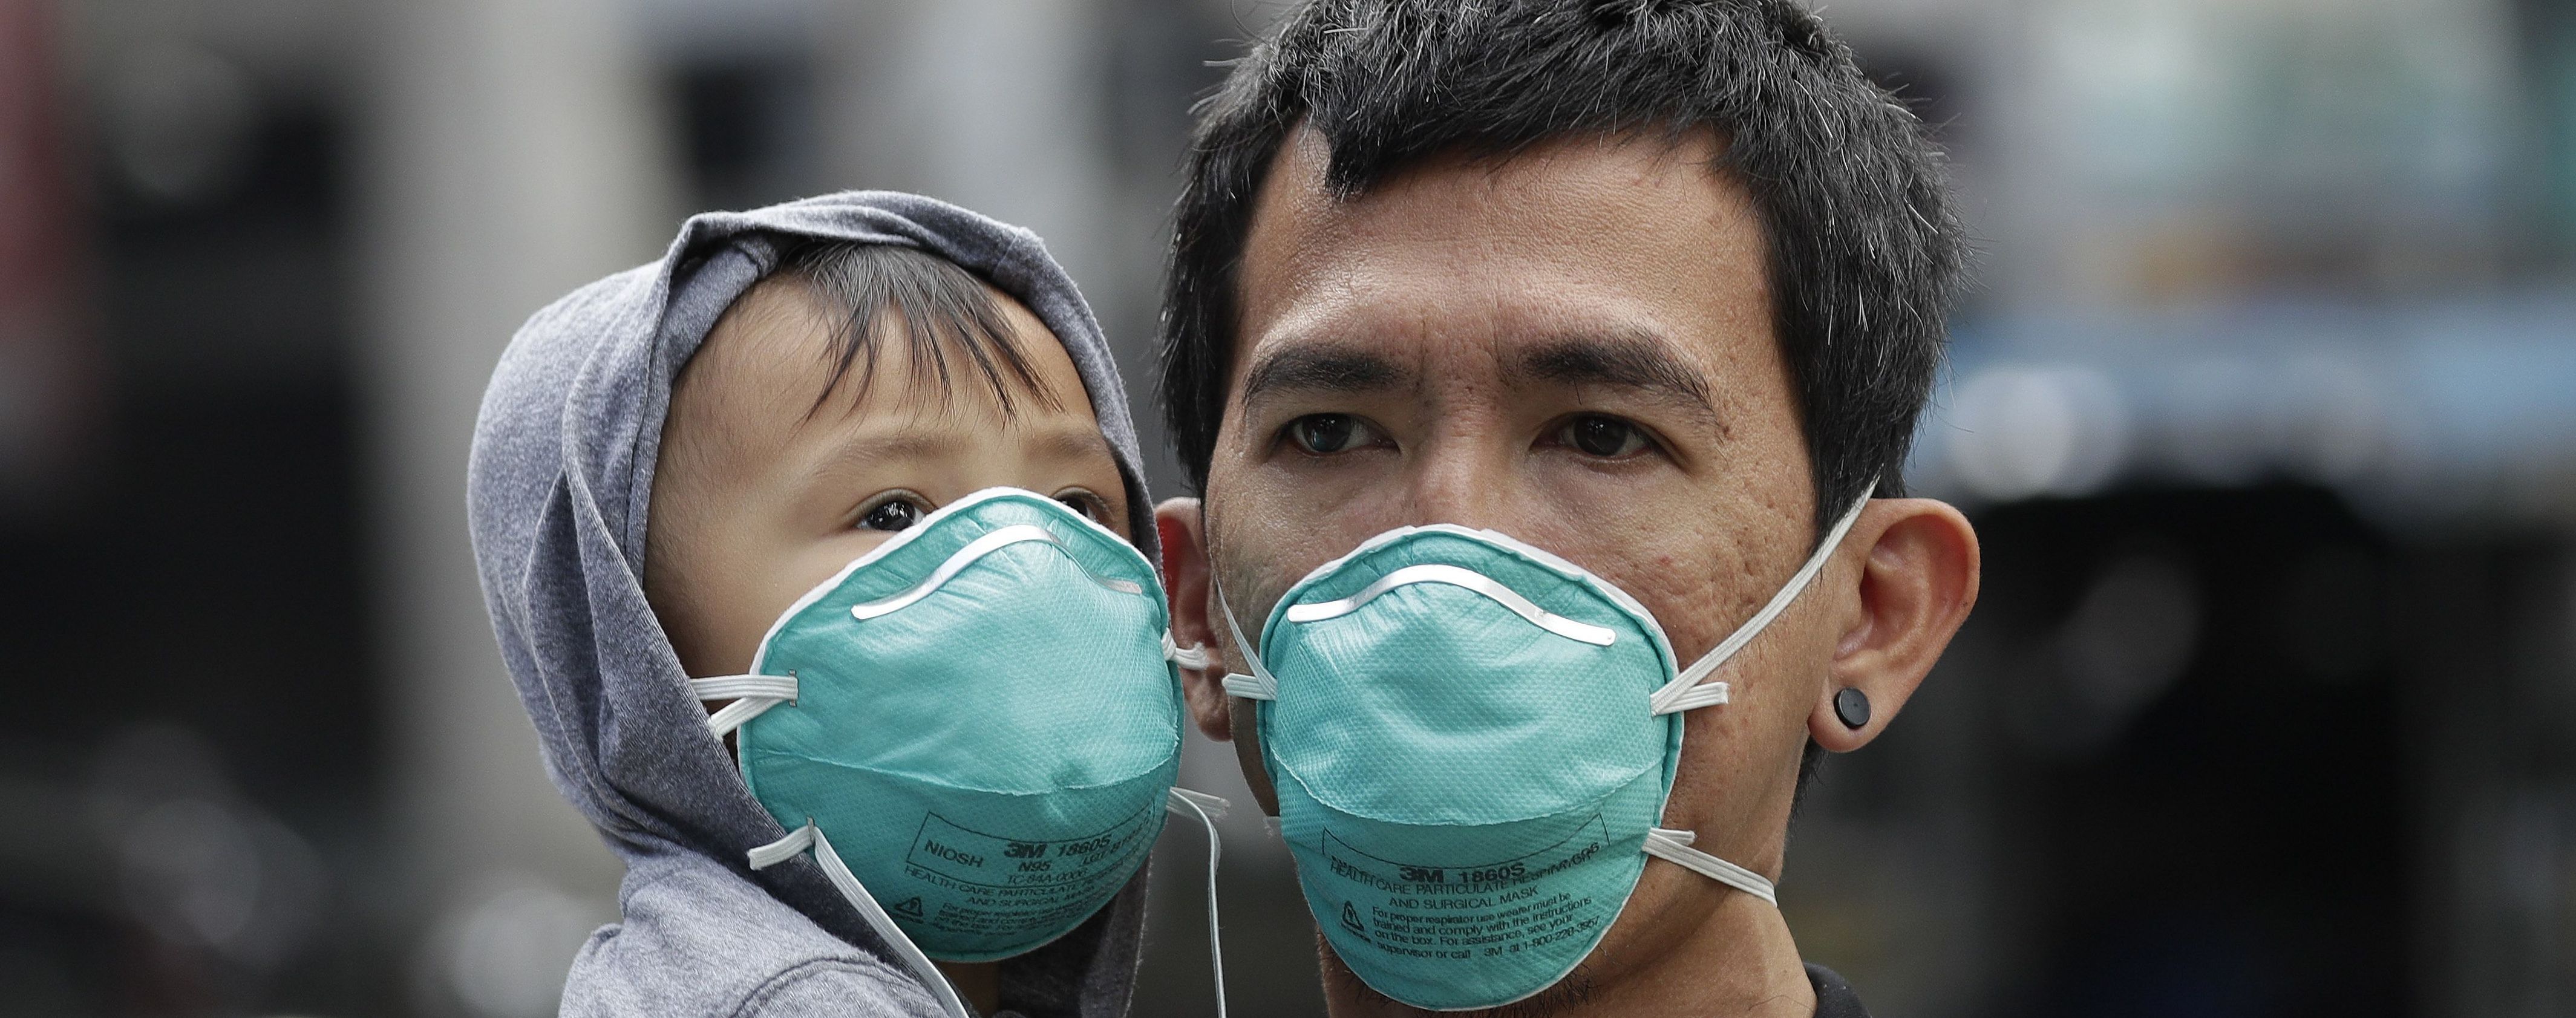 В китайской провинции Хубэй количество больных коронавирусом резко снизилось